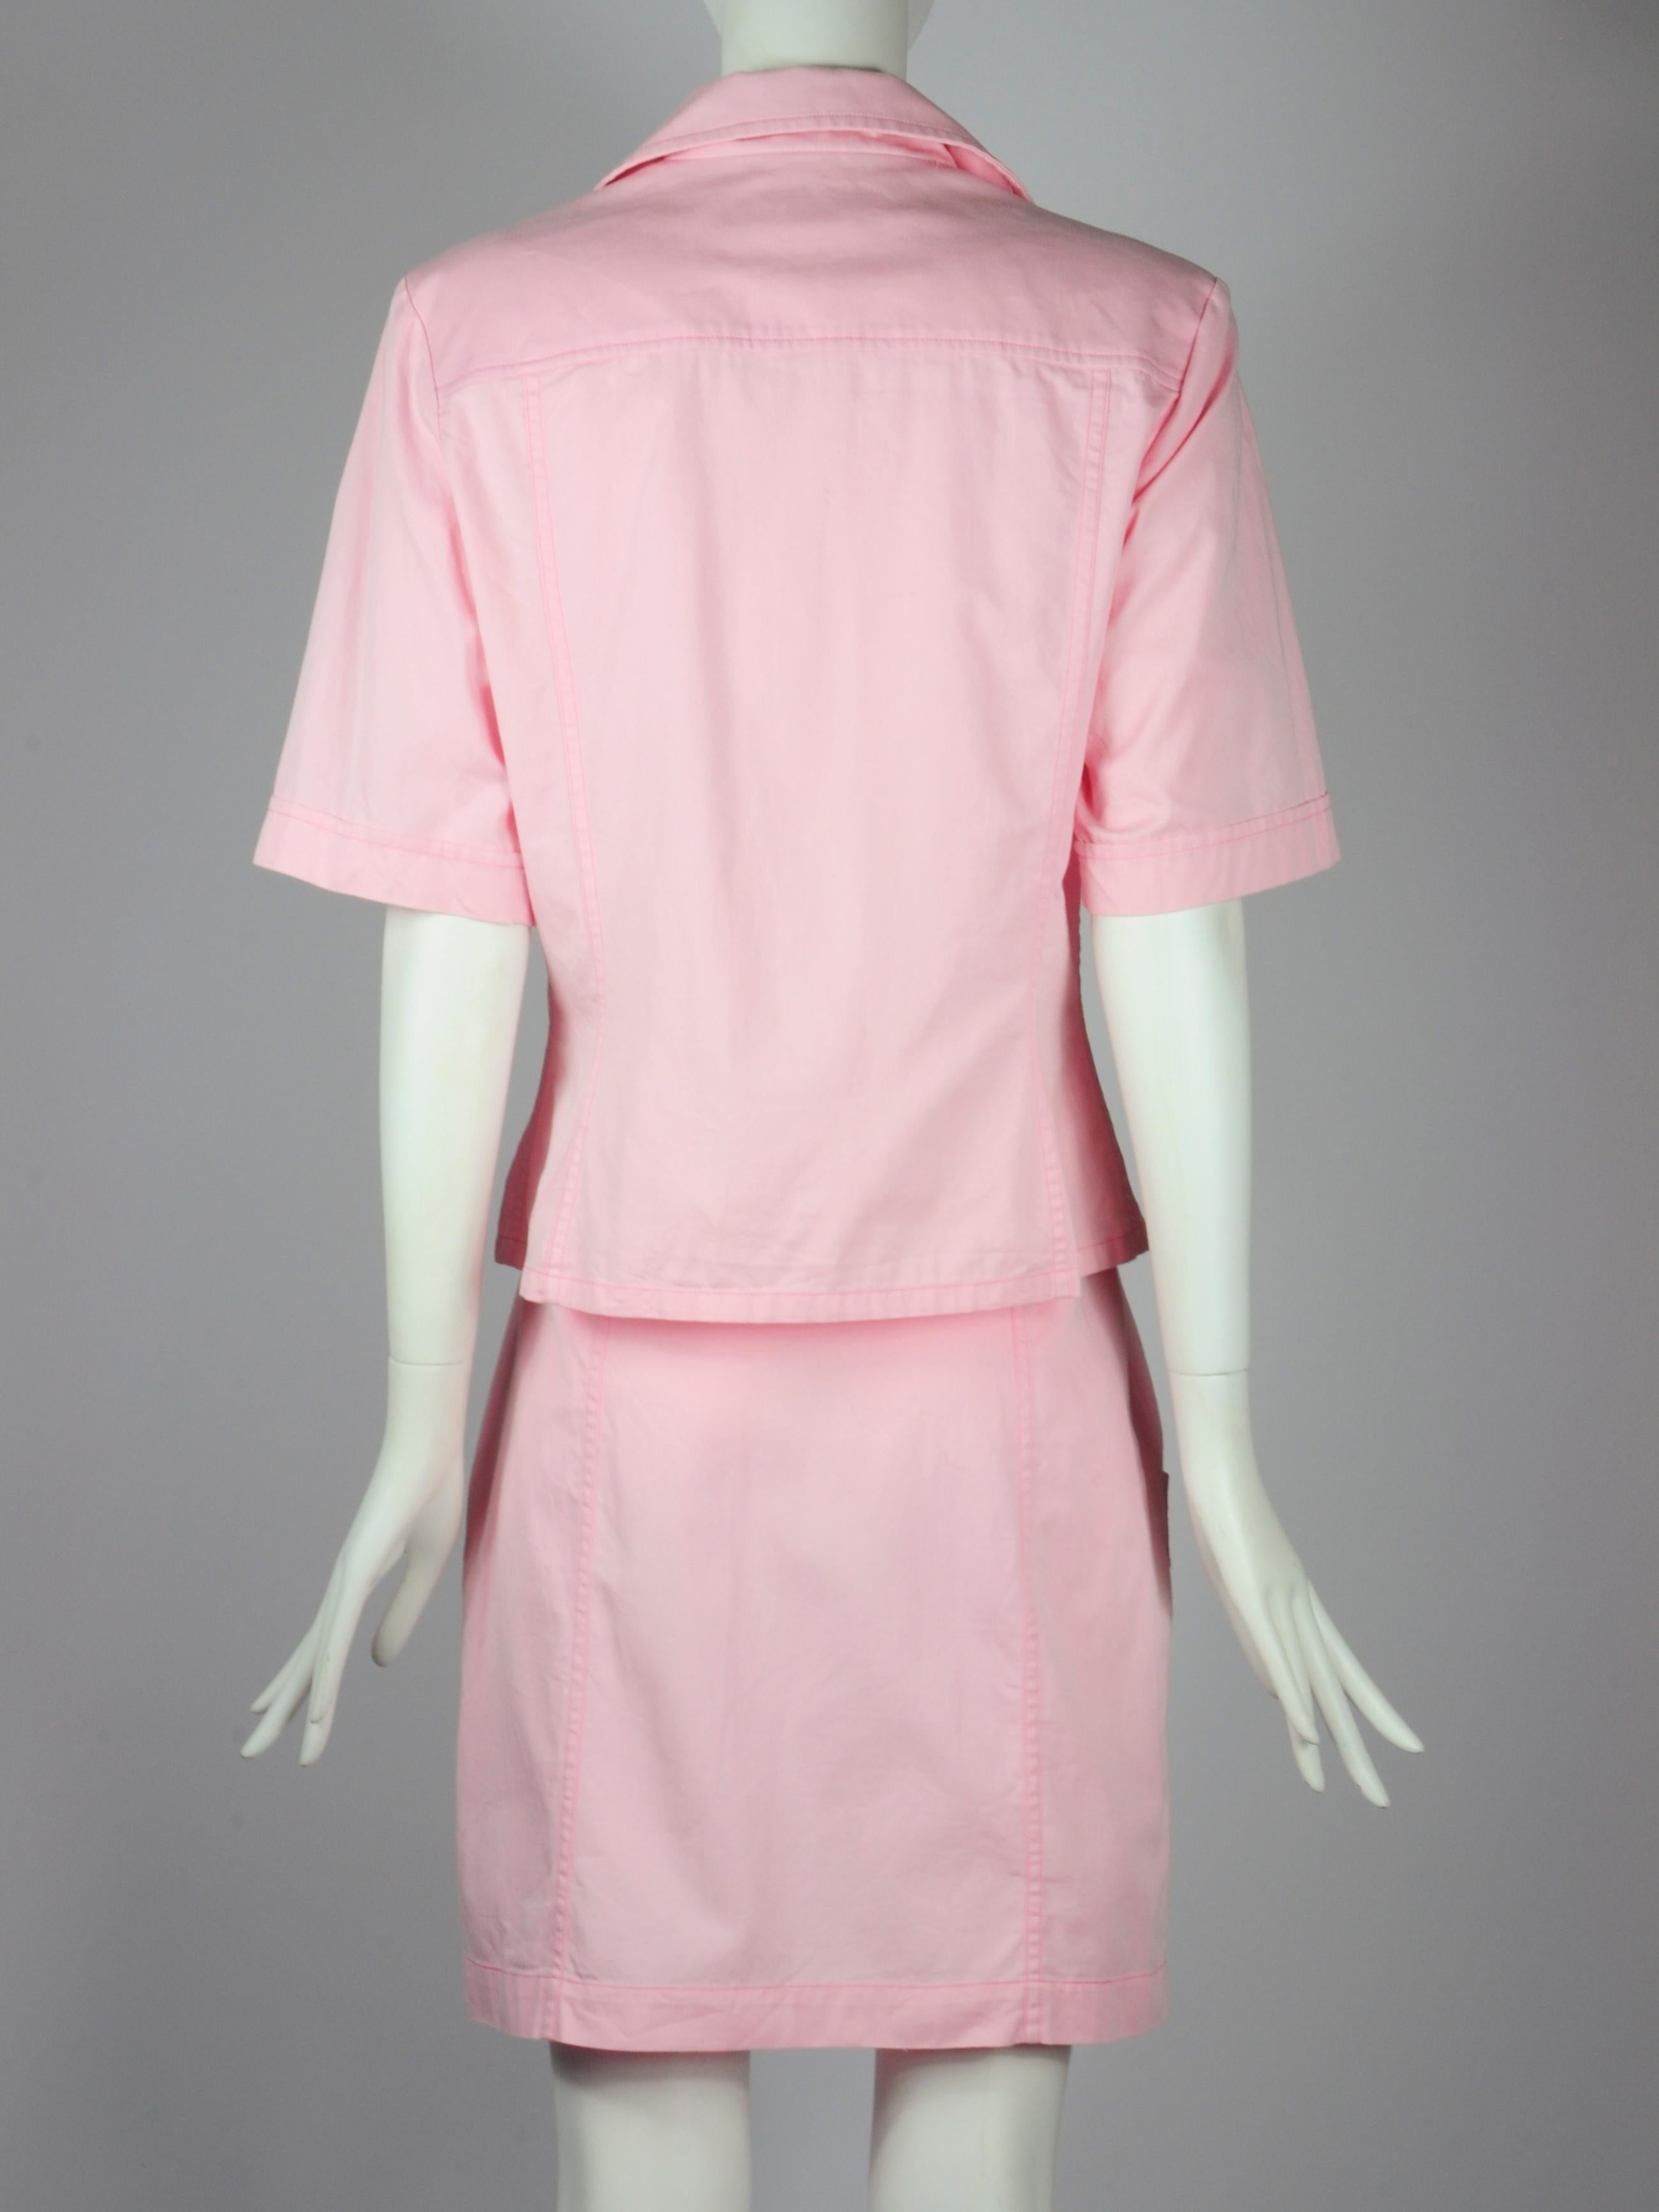 Yves Saint Laurent Saharienne Safari Two Piece Skirt Suit Set Pink Pockets 1990s For Sale 6